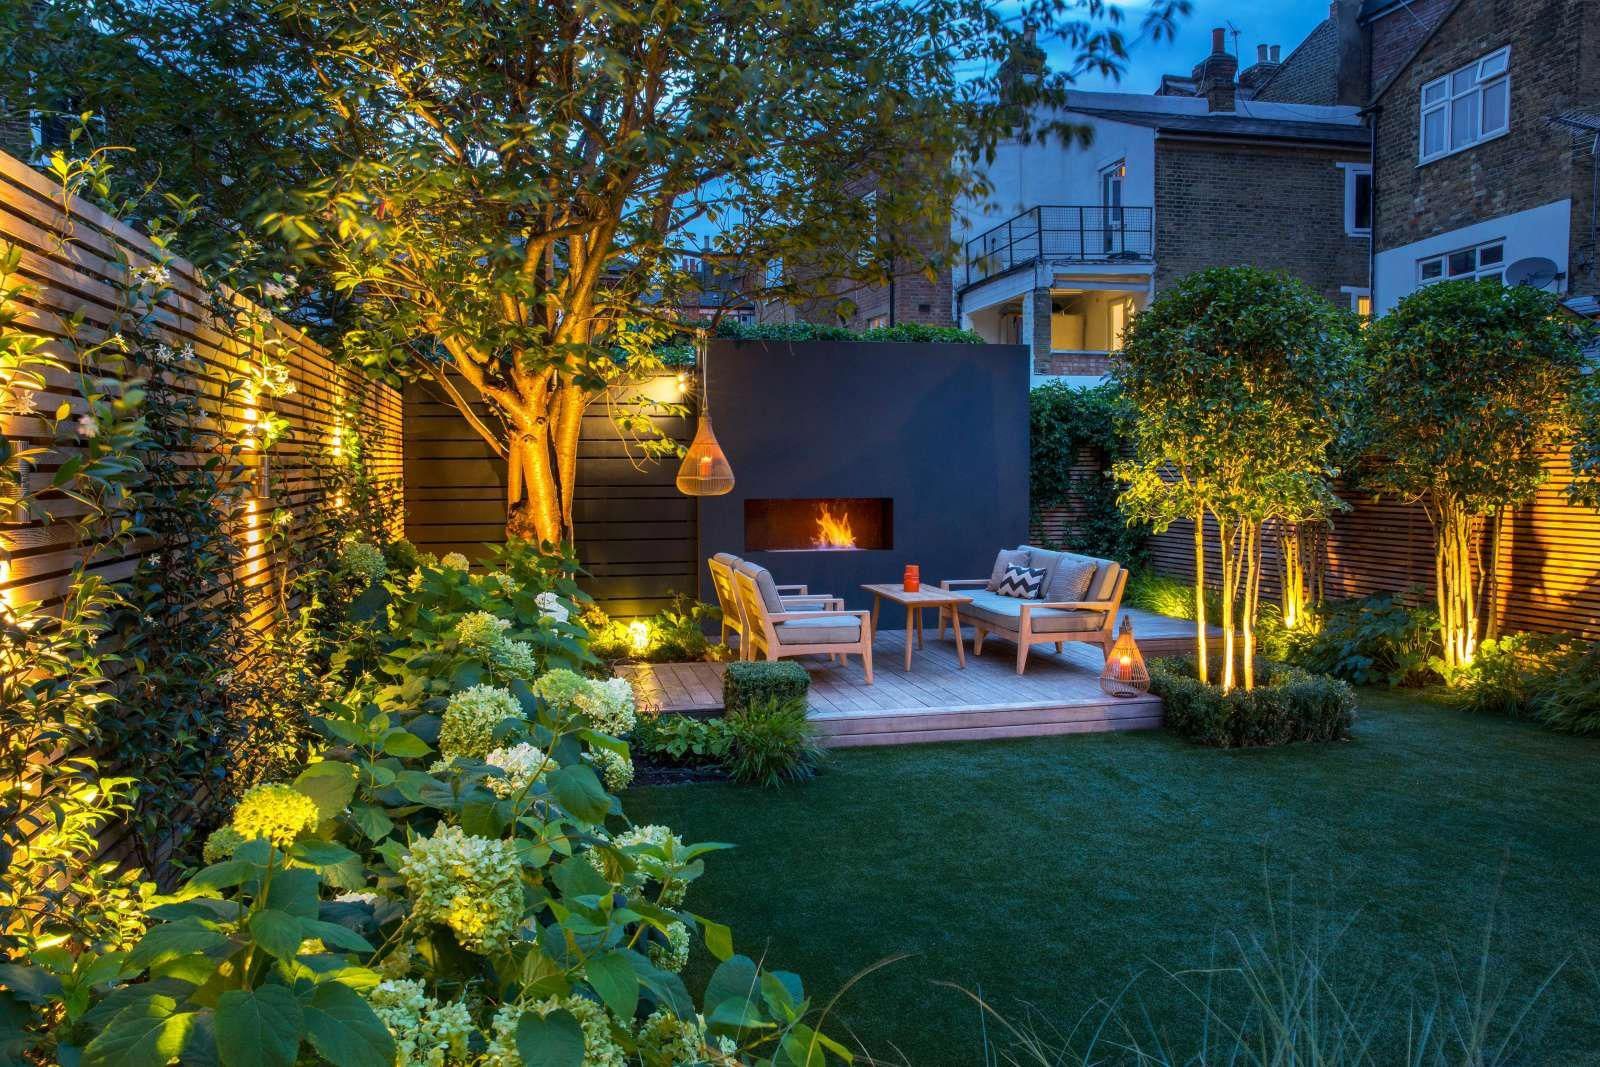 Top London Garden Designs Garden Club London